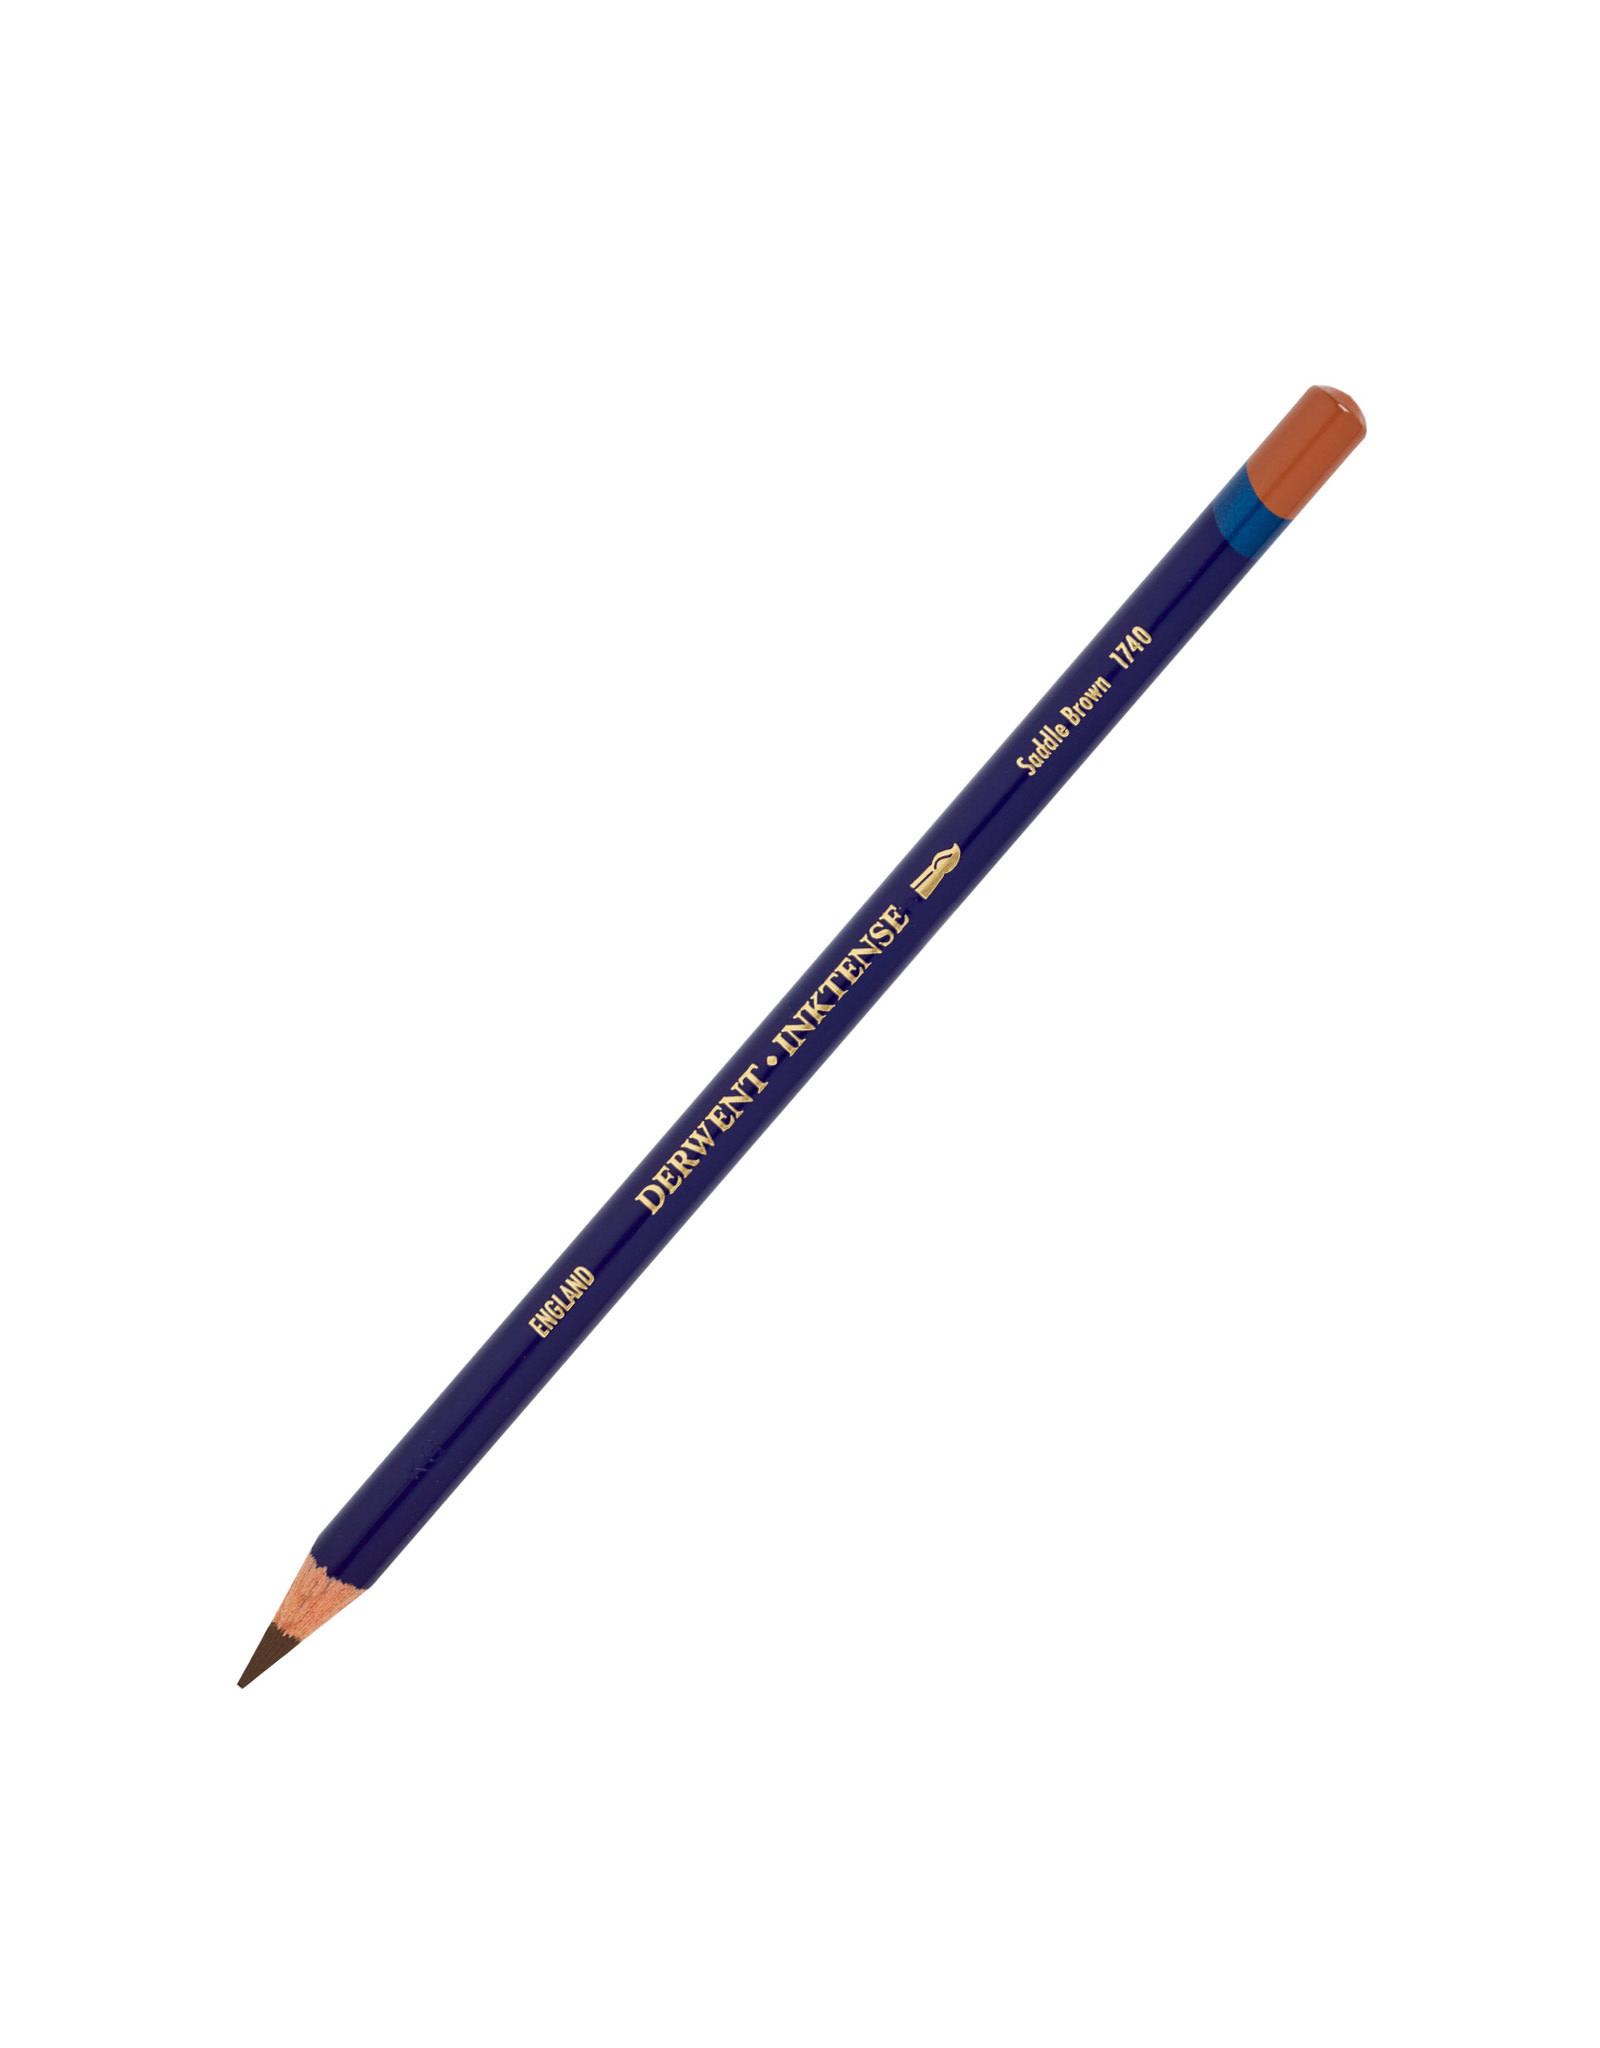 Derwent Derwent Inktense Pencil, Saddle Brown